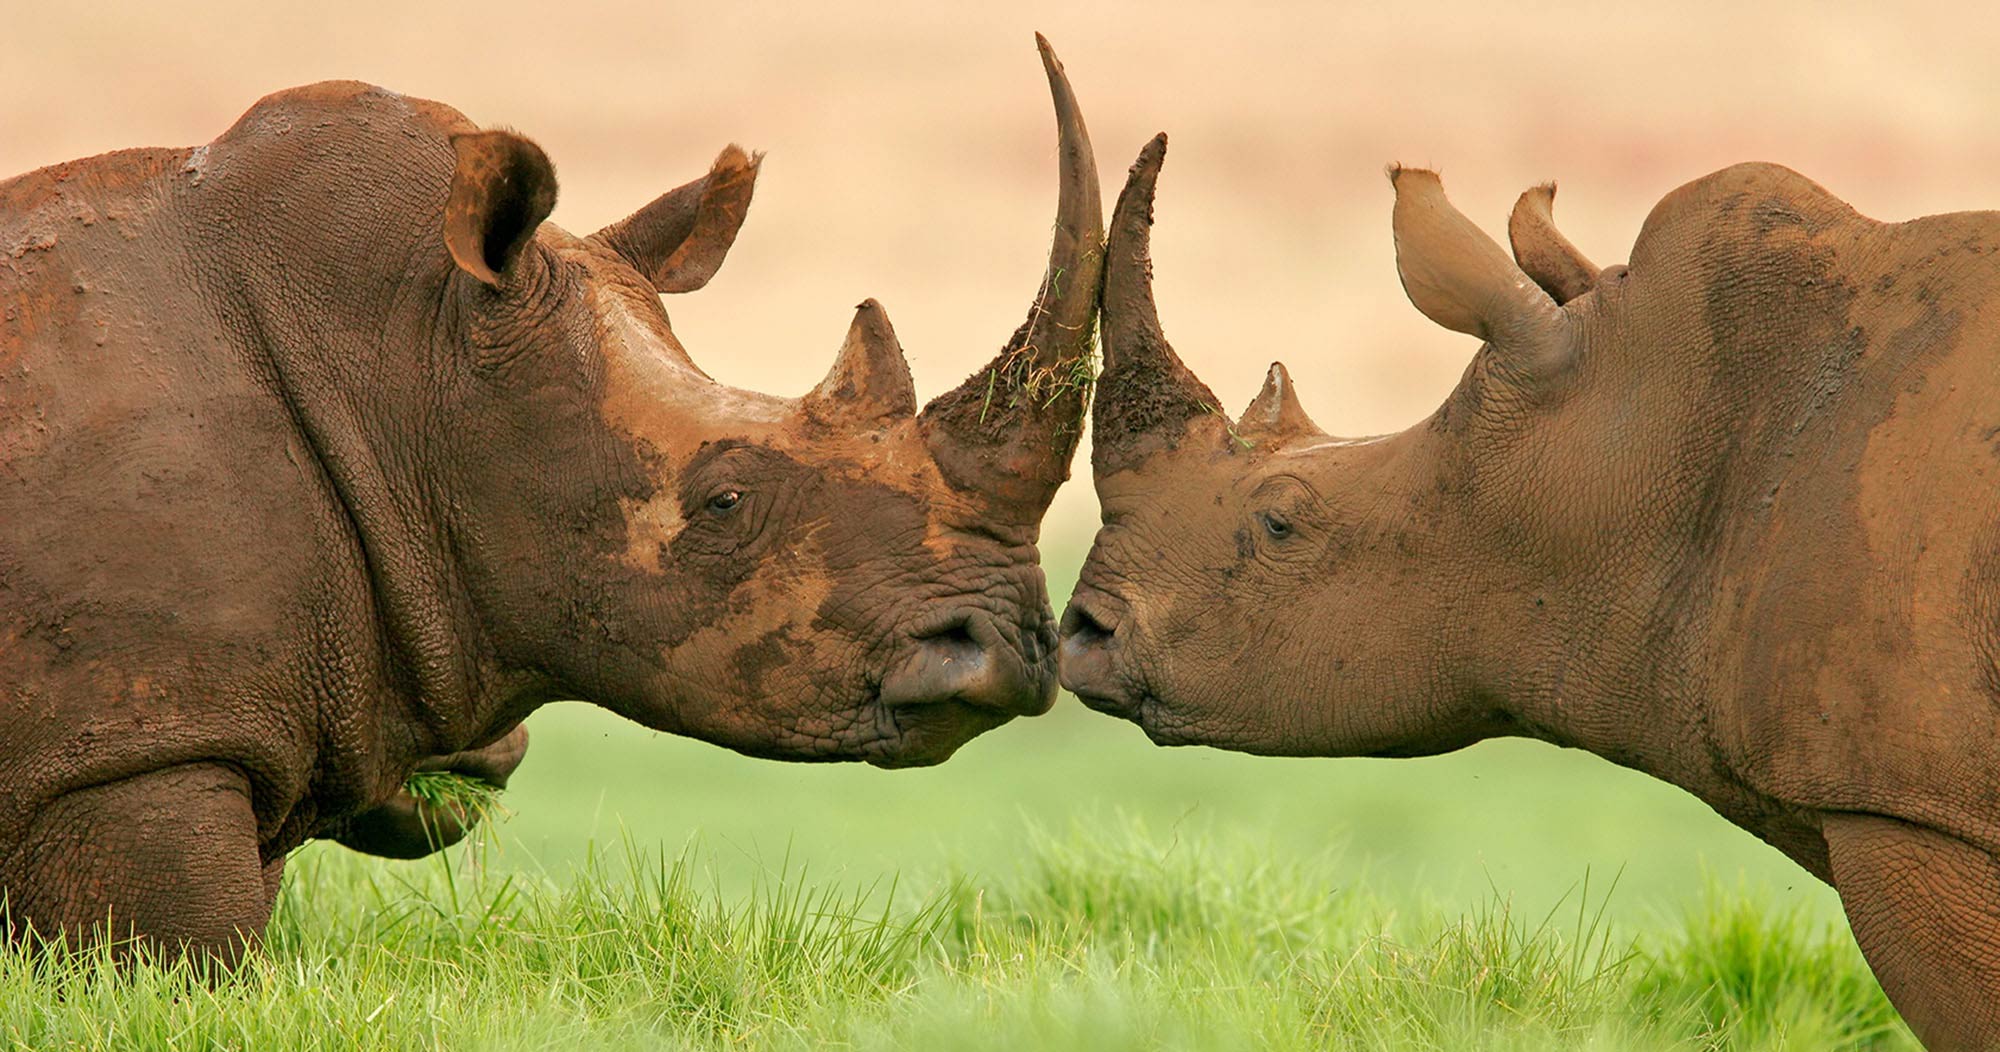 African Big Five | Big 5 Mammals found in Africa | Big 5 Safaris